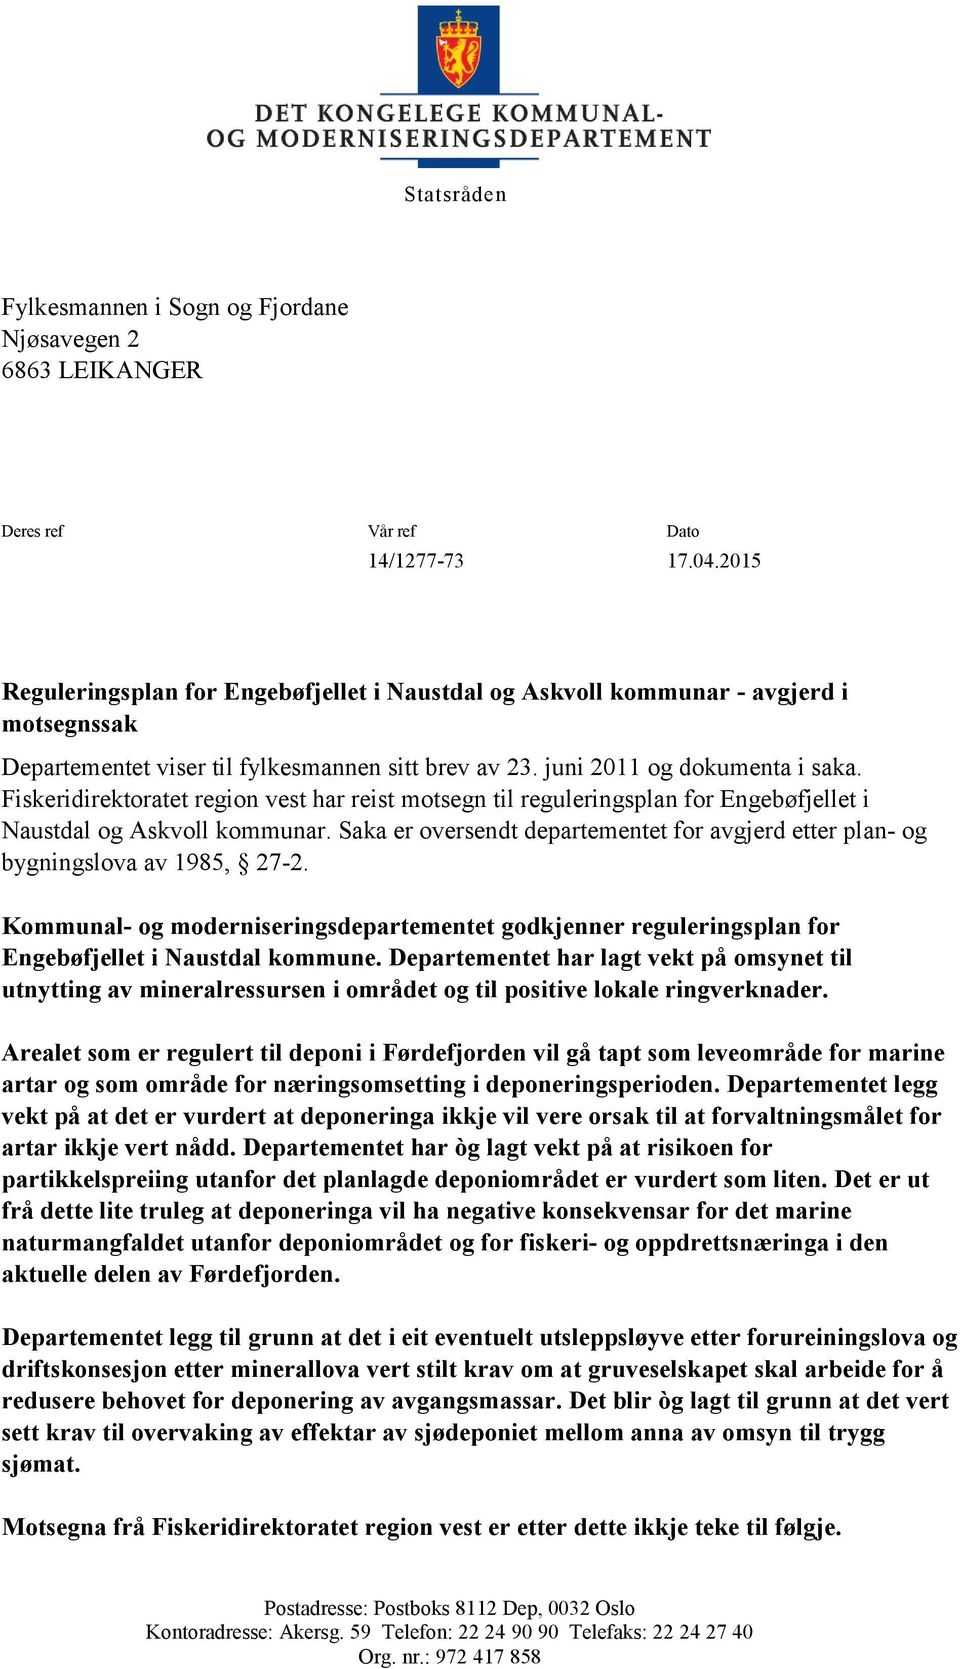 Fiskeridirektoratet region vest har reist motsegn til reguleringsplan for Engebøfjellet i Naustdal og Askvoll kommunar.